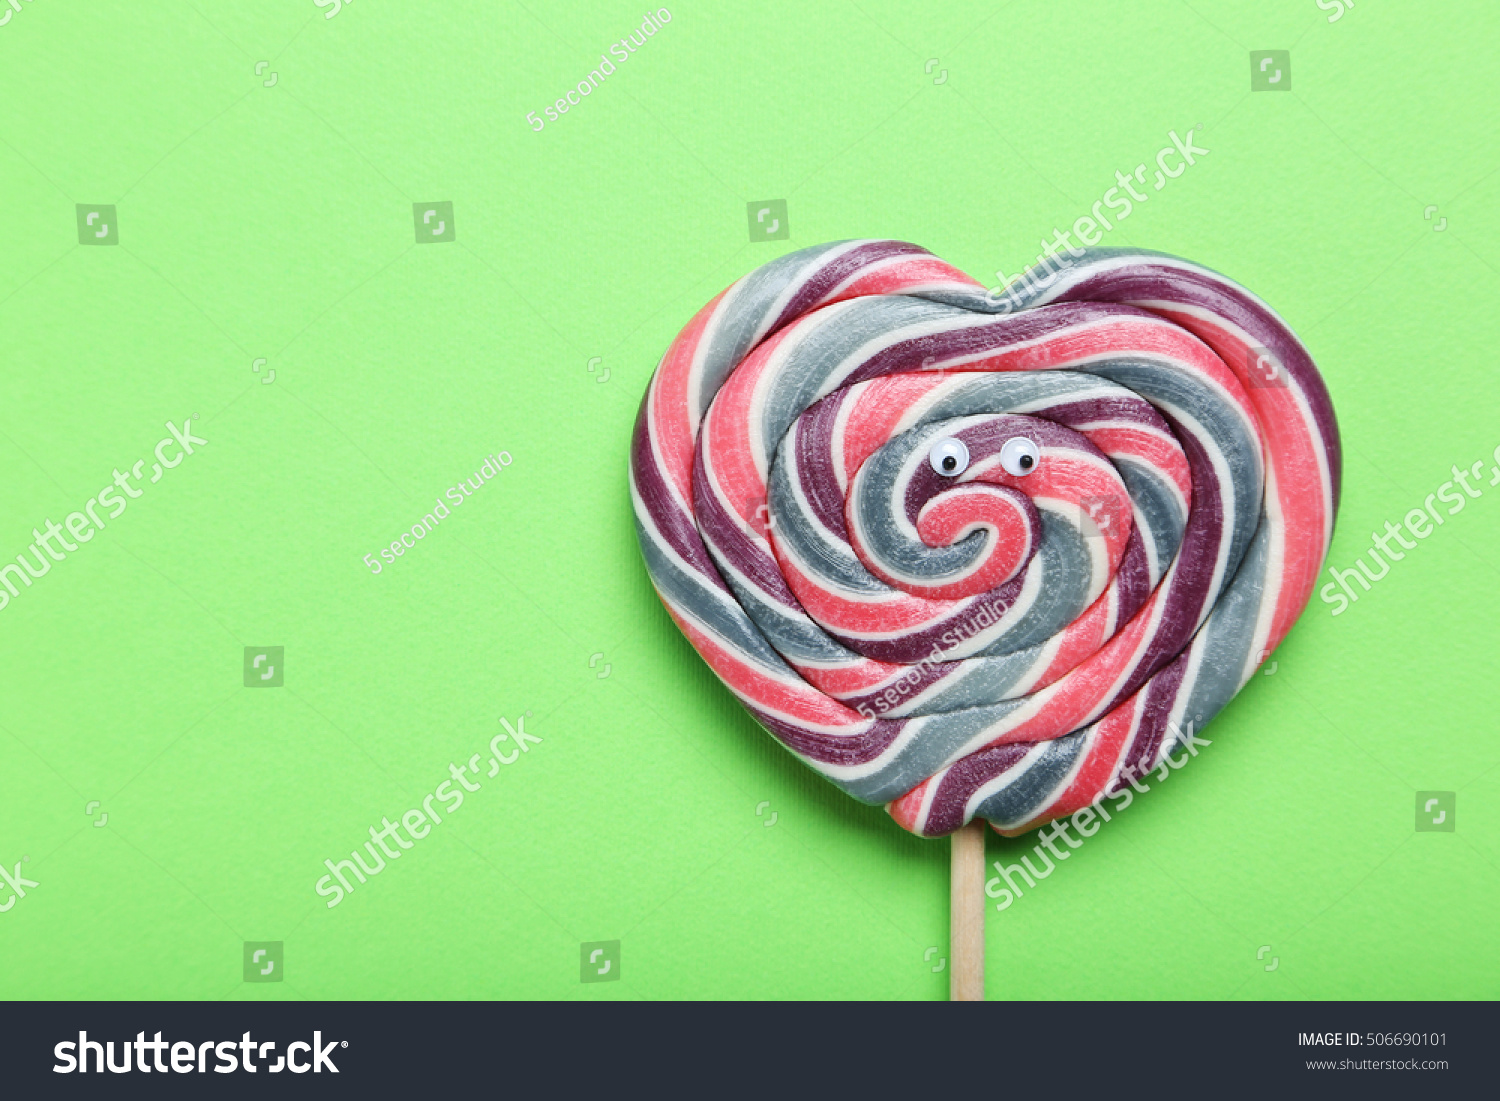 Sweet Lollipop Googly Eyes On Green Stock Photo 506690101 - Shutterstock